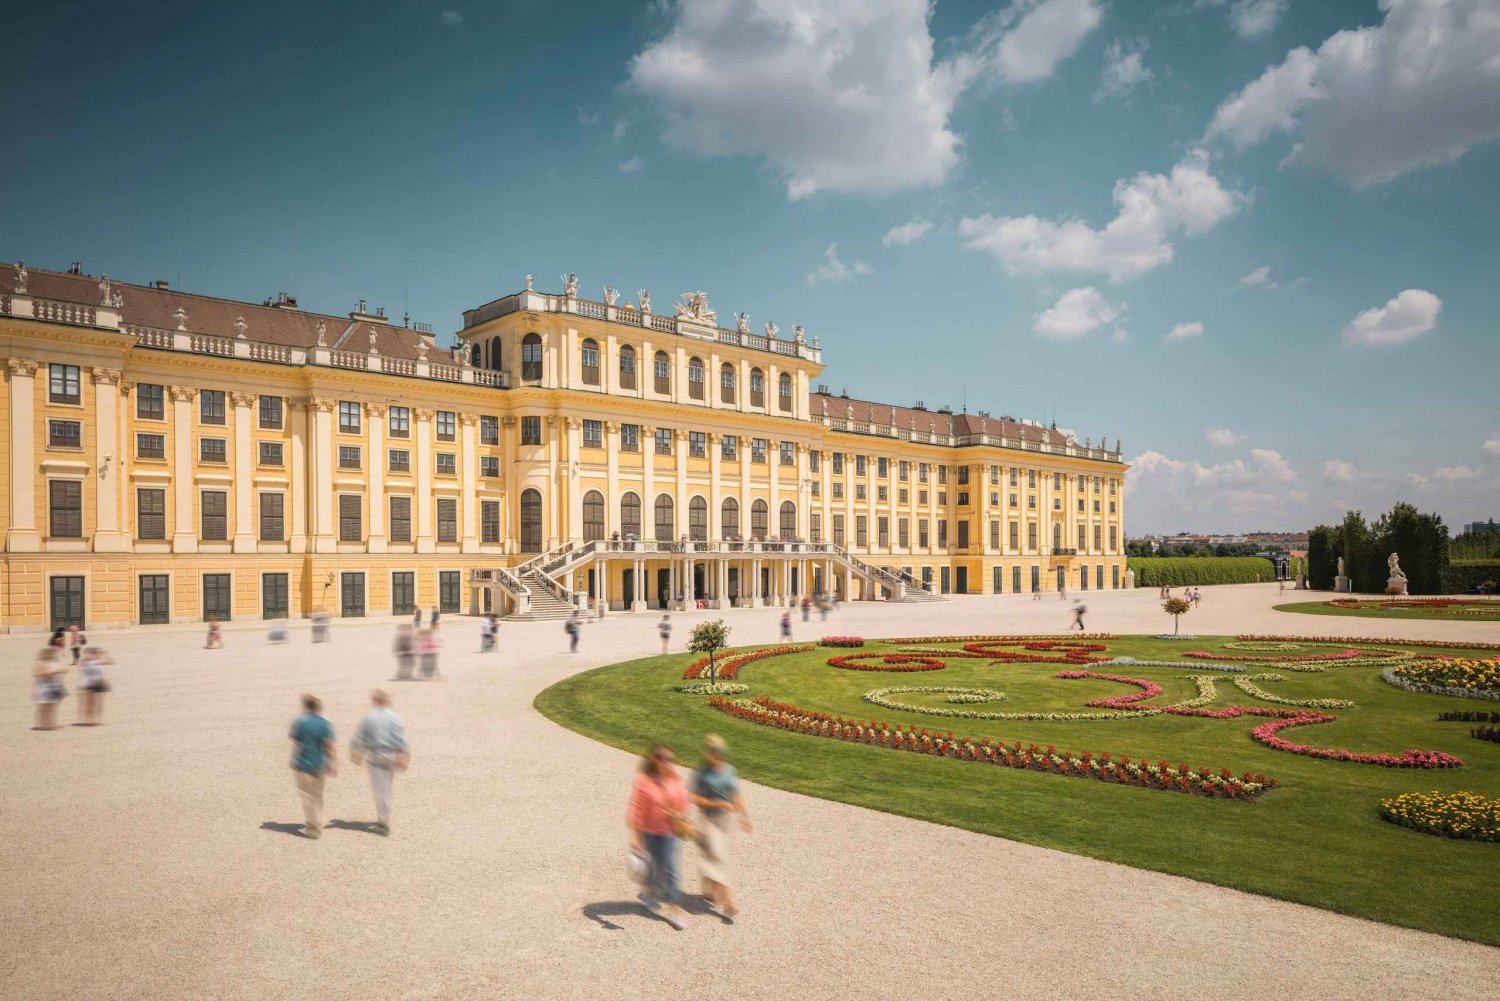 Viena: entrada sem fila no Palácio de Schönbrunn e degustação de vinhos